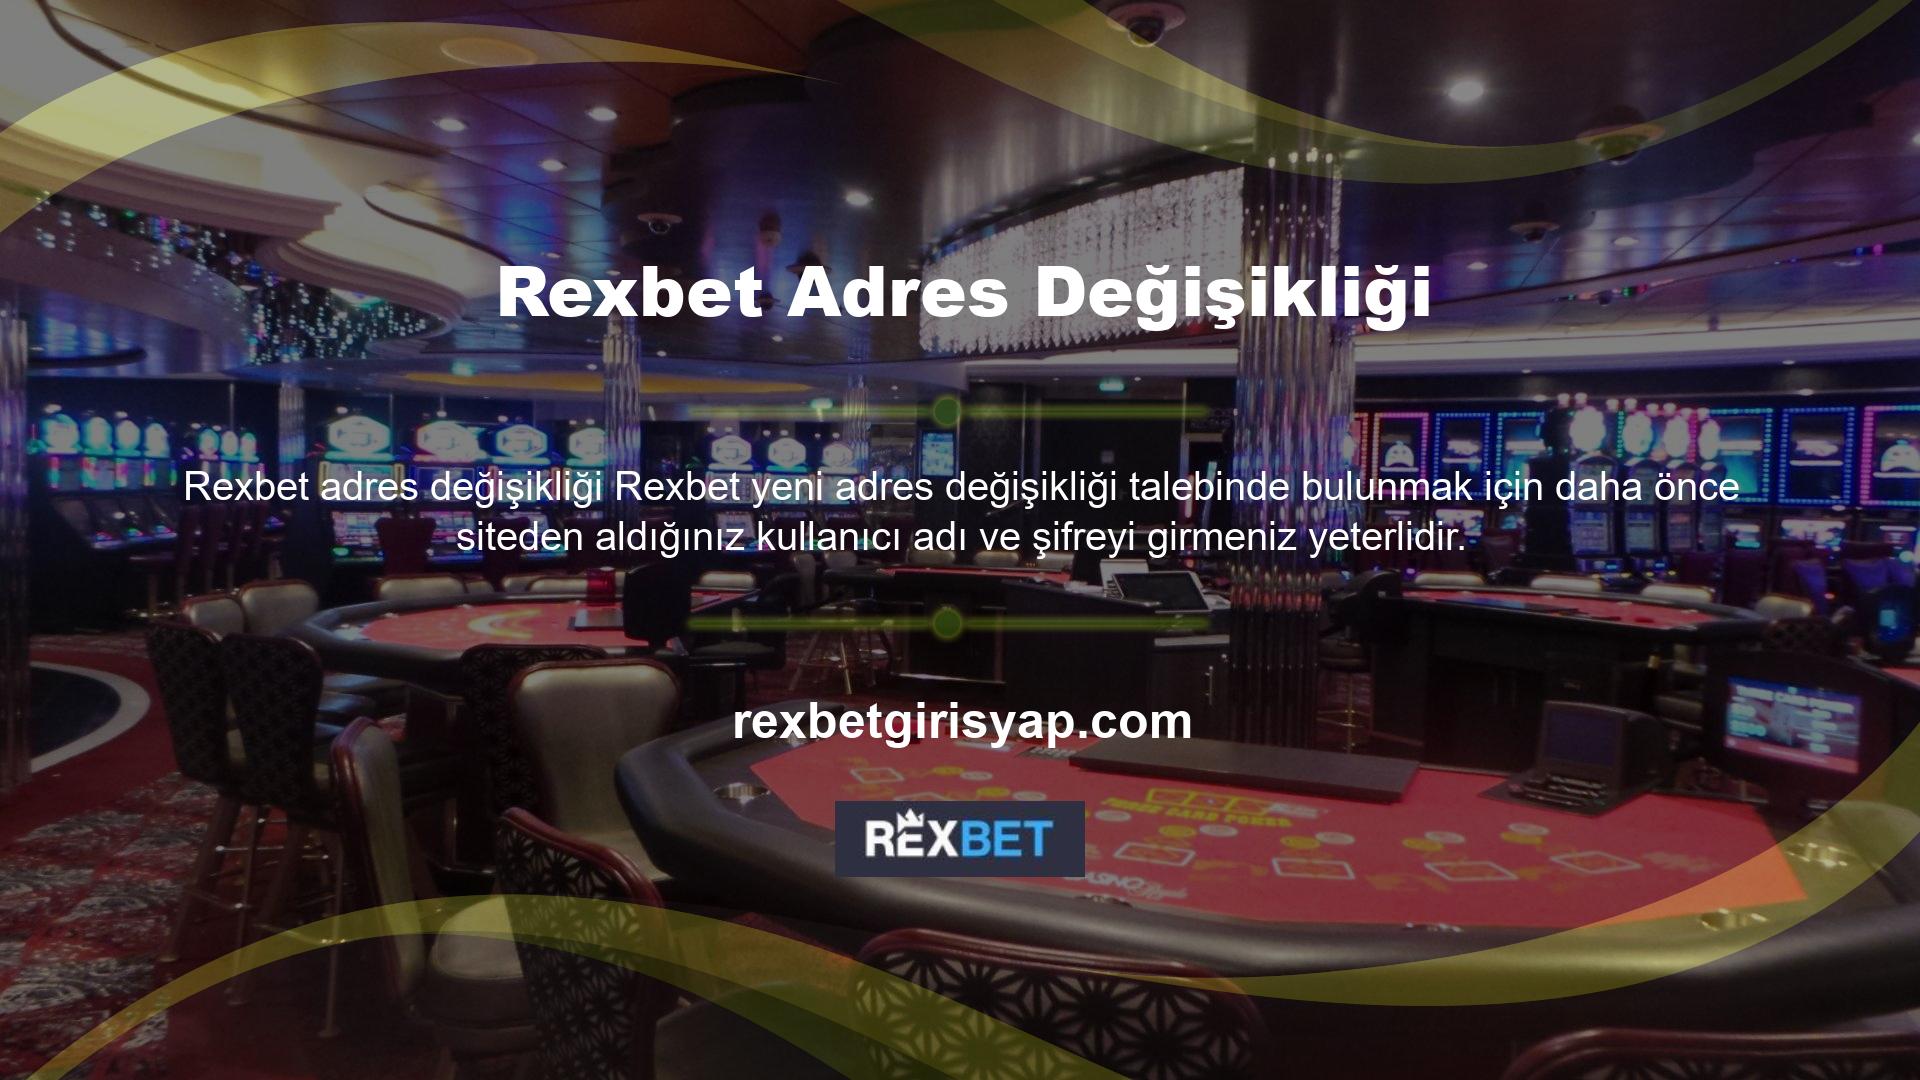 Rexbet Oranlı Bahis Üstelik Rexbet yeni adresinin teknik altyapısı, oyuncuların bahis sitesine güvenmesine ve sitede iyi vakit geçirmesine olanak tanıyor